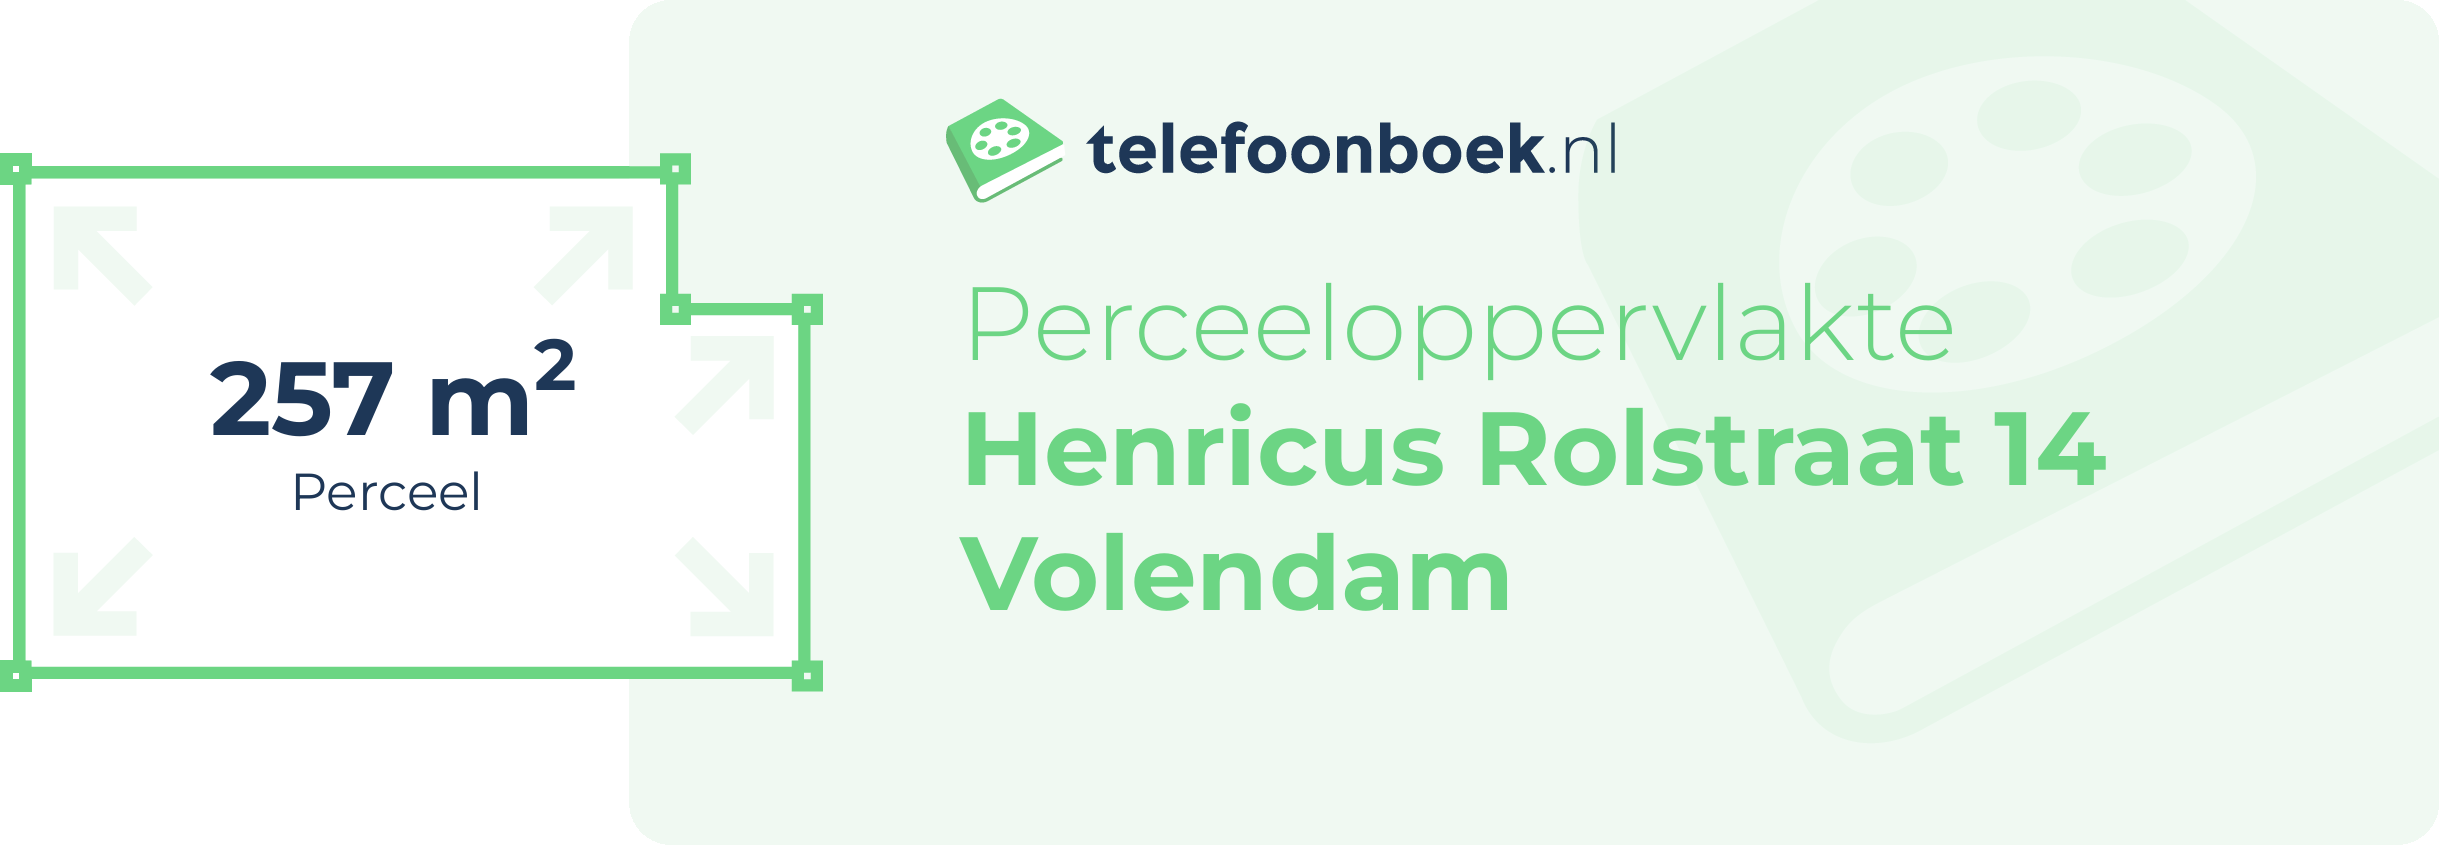 Perceeloppervlakte Henricus Rolstraat 14 Volendam